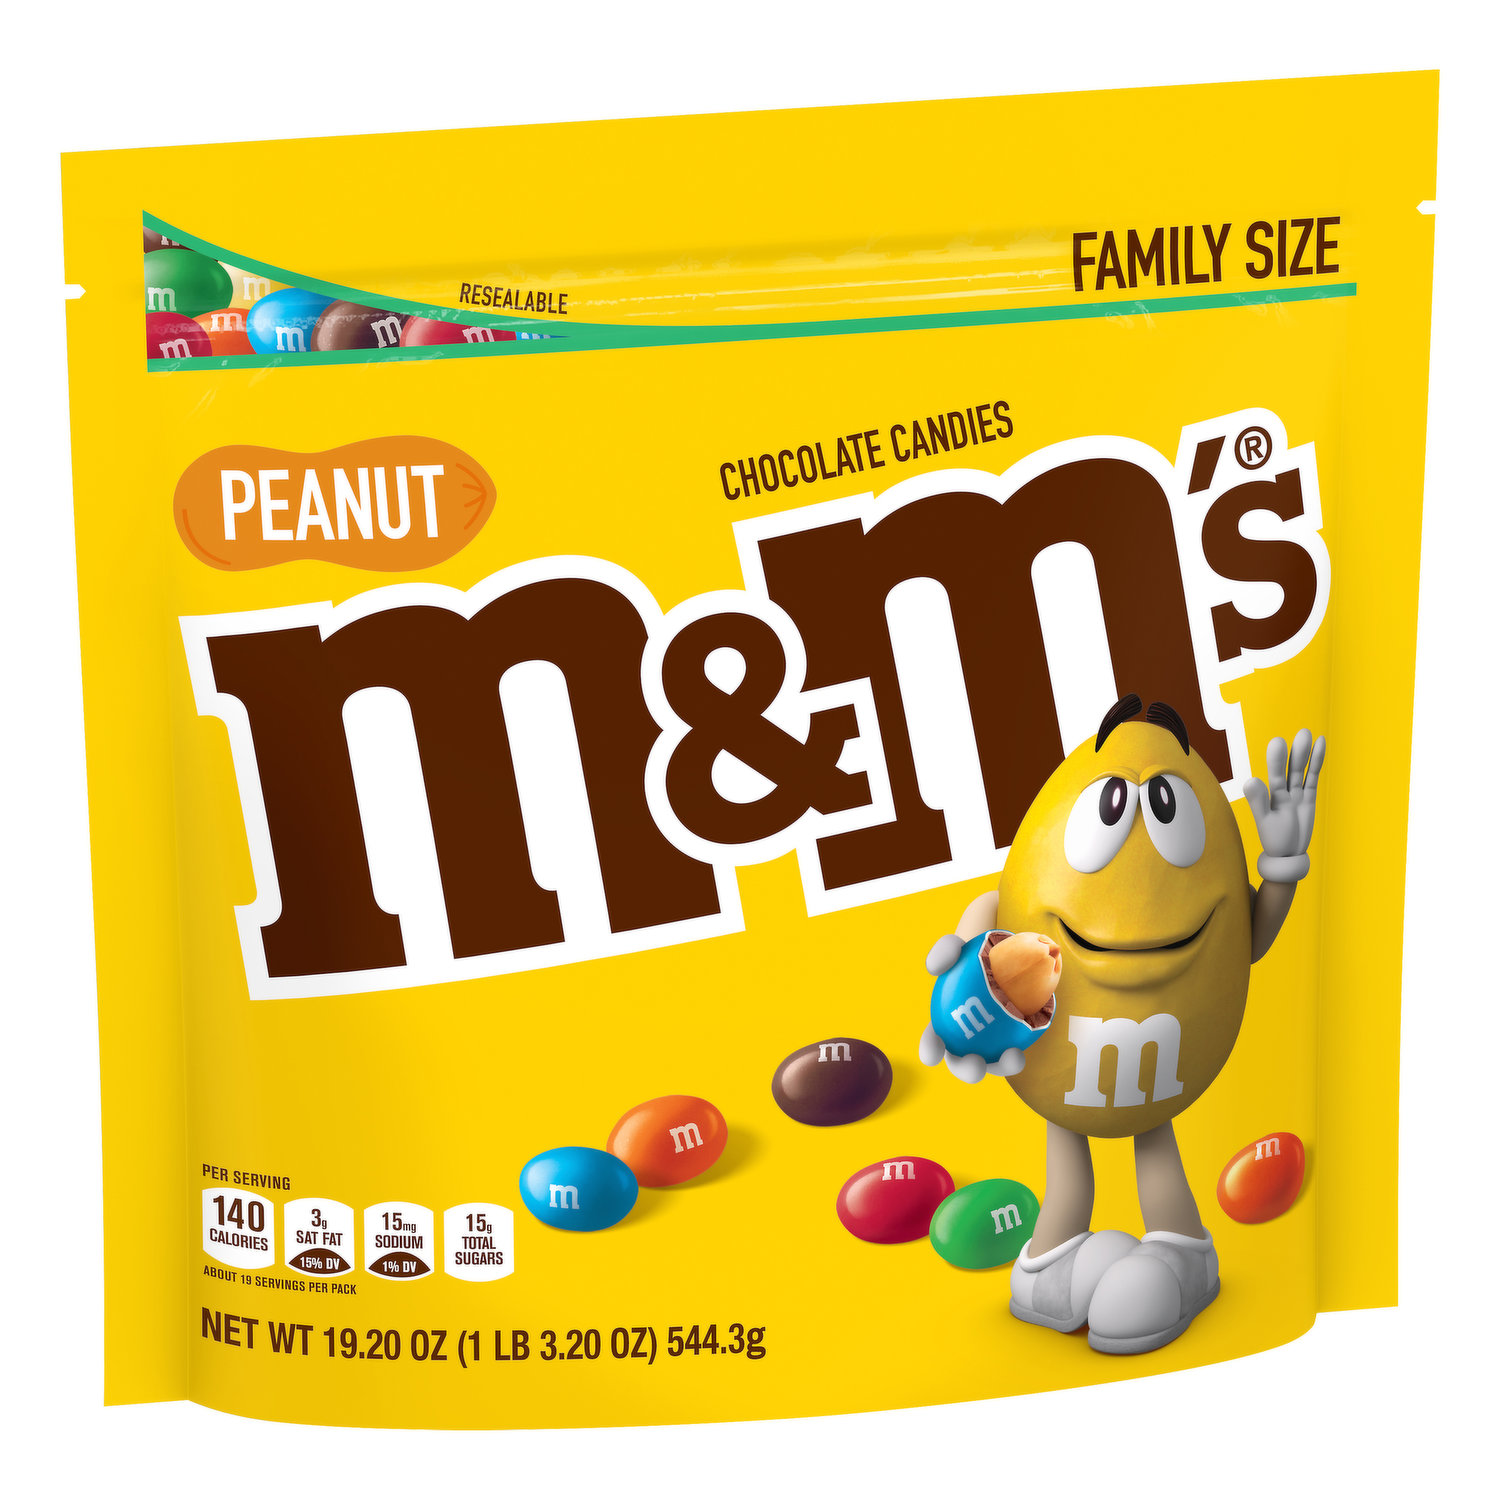 M&M'S Peanut Milk Chocolate Party Bulk Bag, India